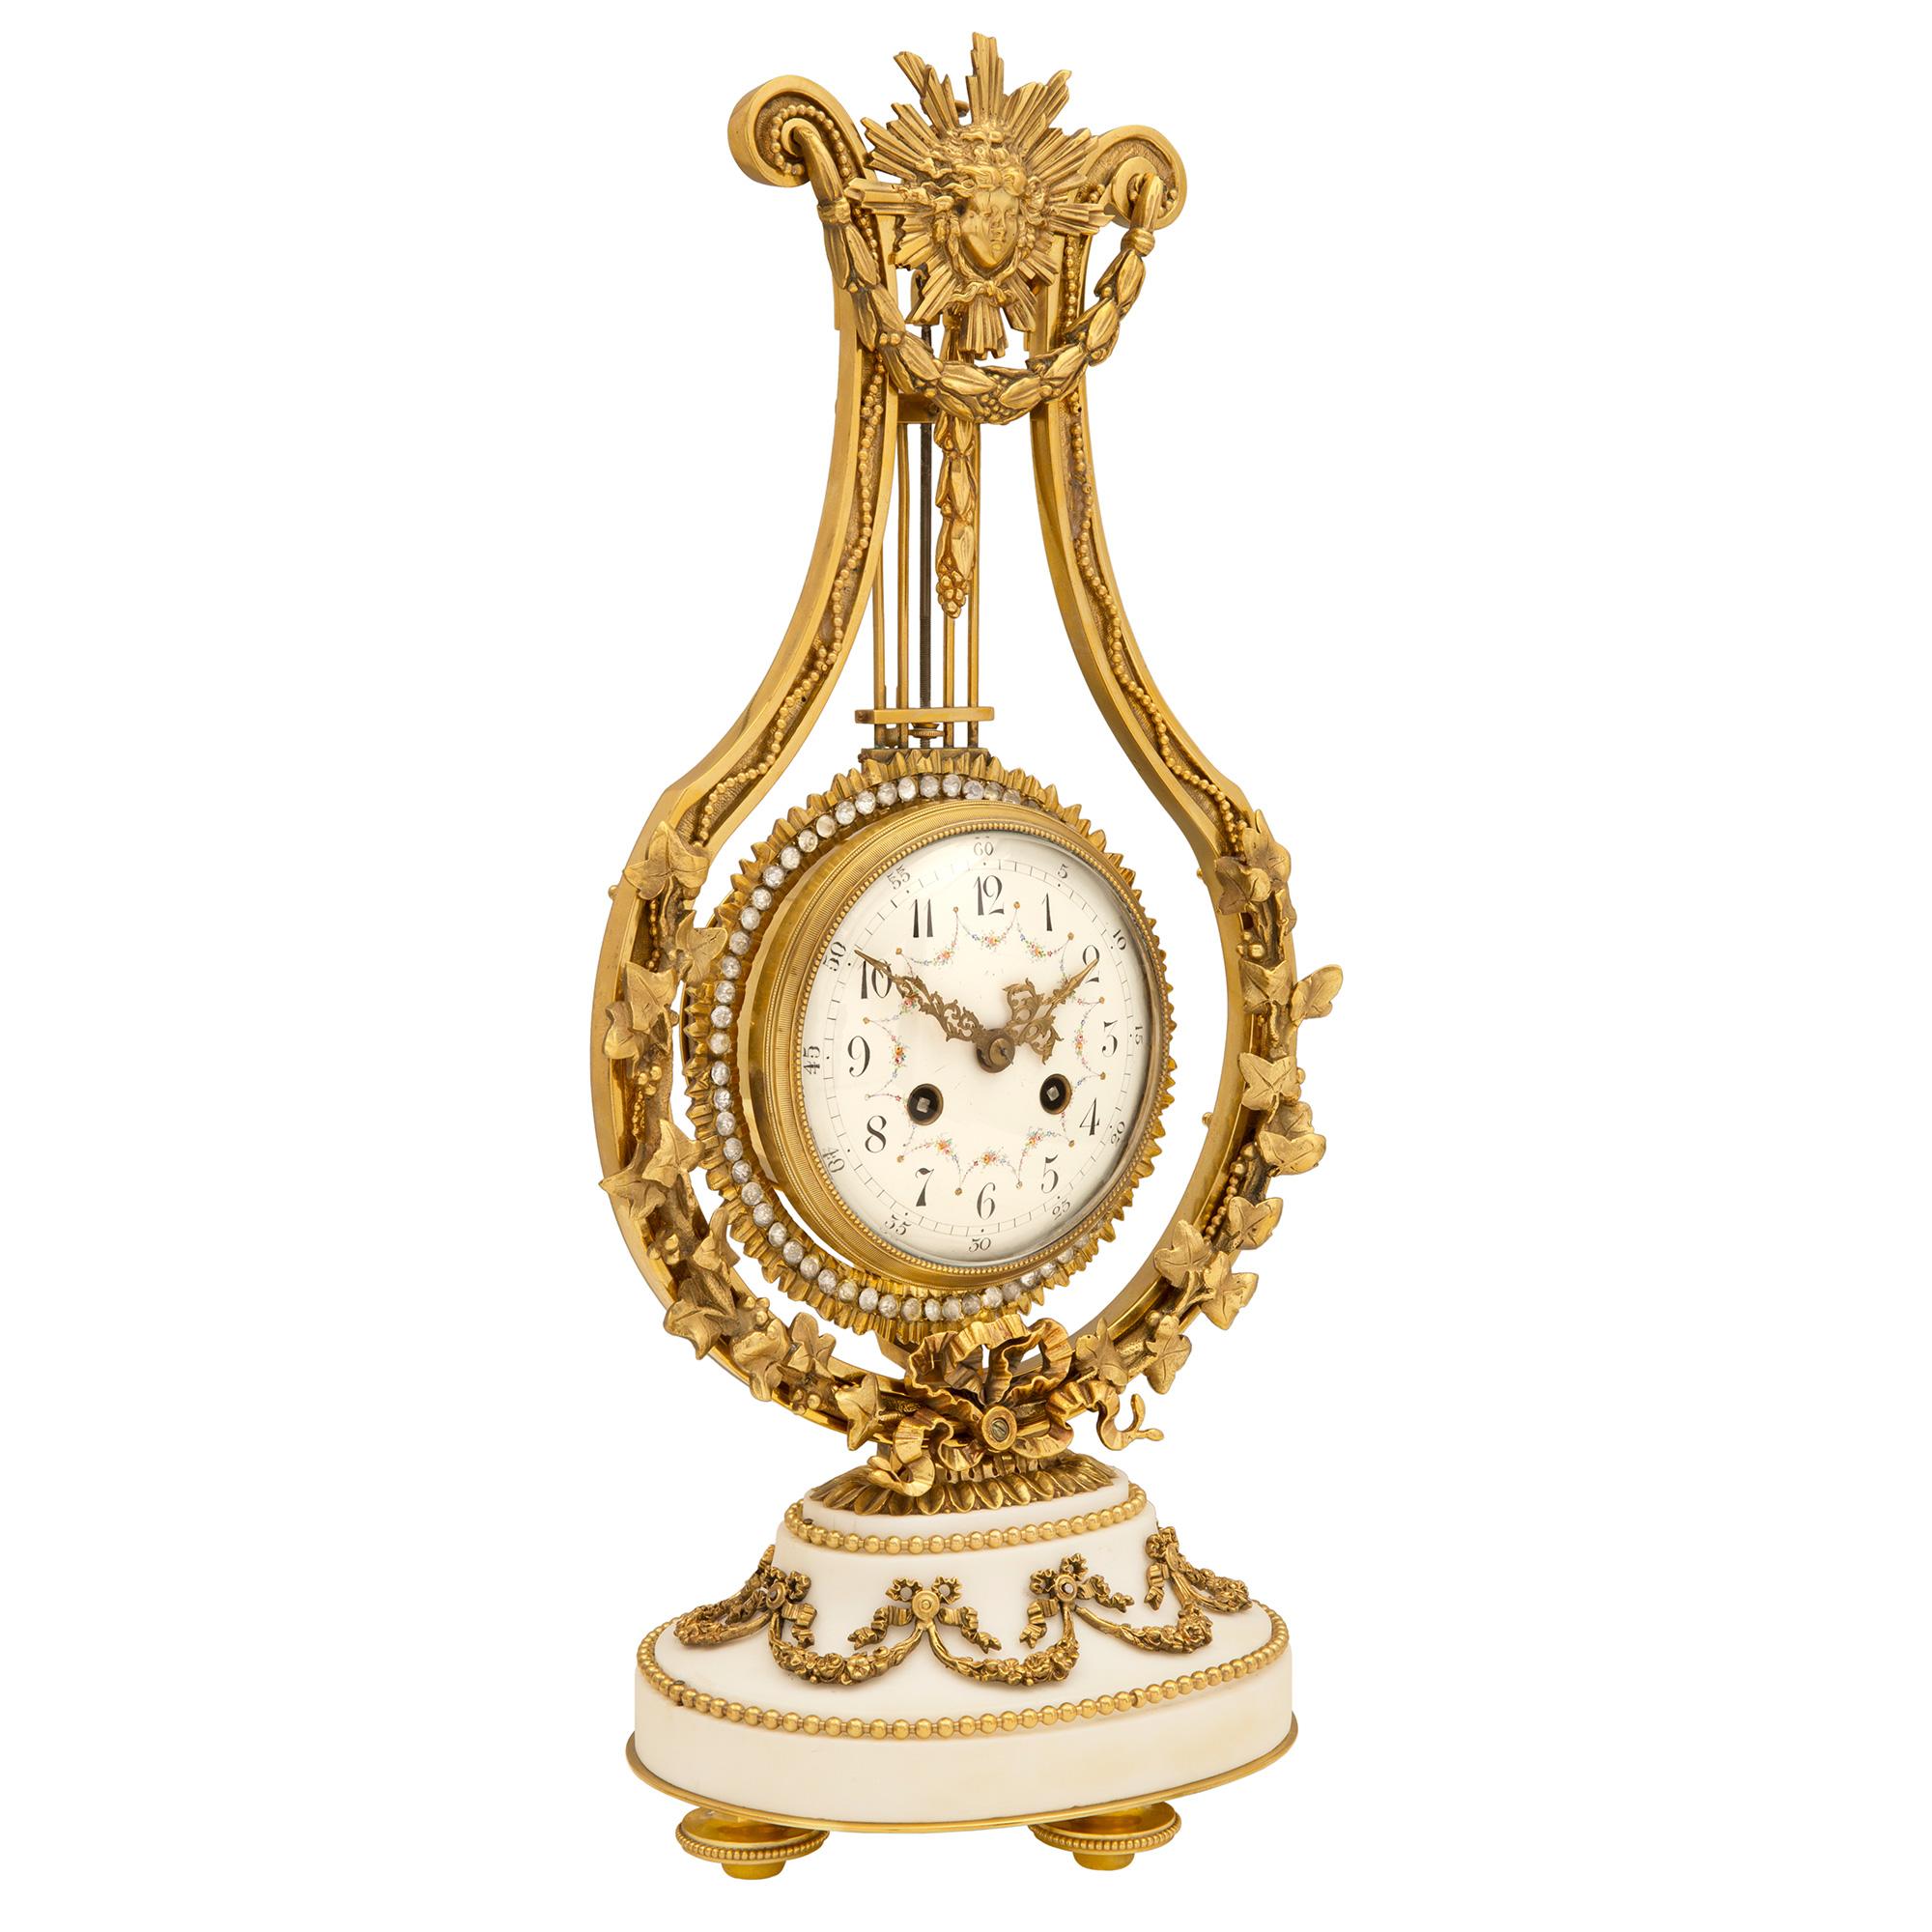 Une très belle pendule française du milieu du XIXe siècle, de style Louis XVI, en bronze doré, marbre blanc de Carrare et cristal. L'horloge repose sur une base ovale moulée en marbre blanc de Carrare, soutenue par des pieds en forme de topie